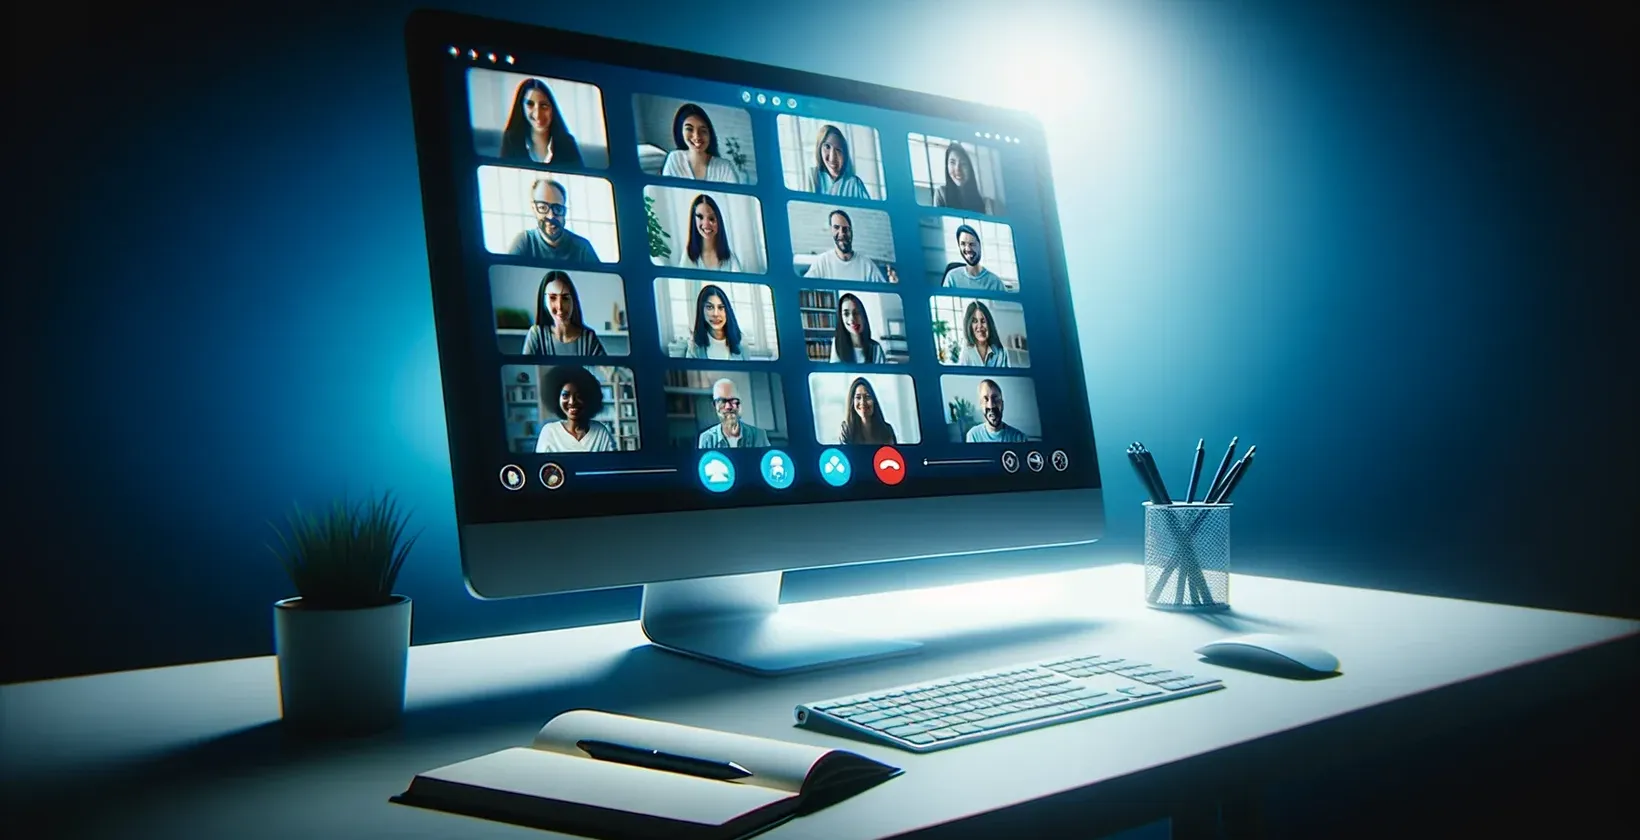 Een afbeelding van een computerscherm met een GoToMeeting sessie, met een groep mensen en live transcriptie zichtbaar.